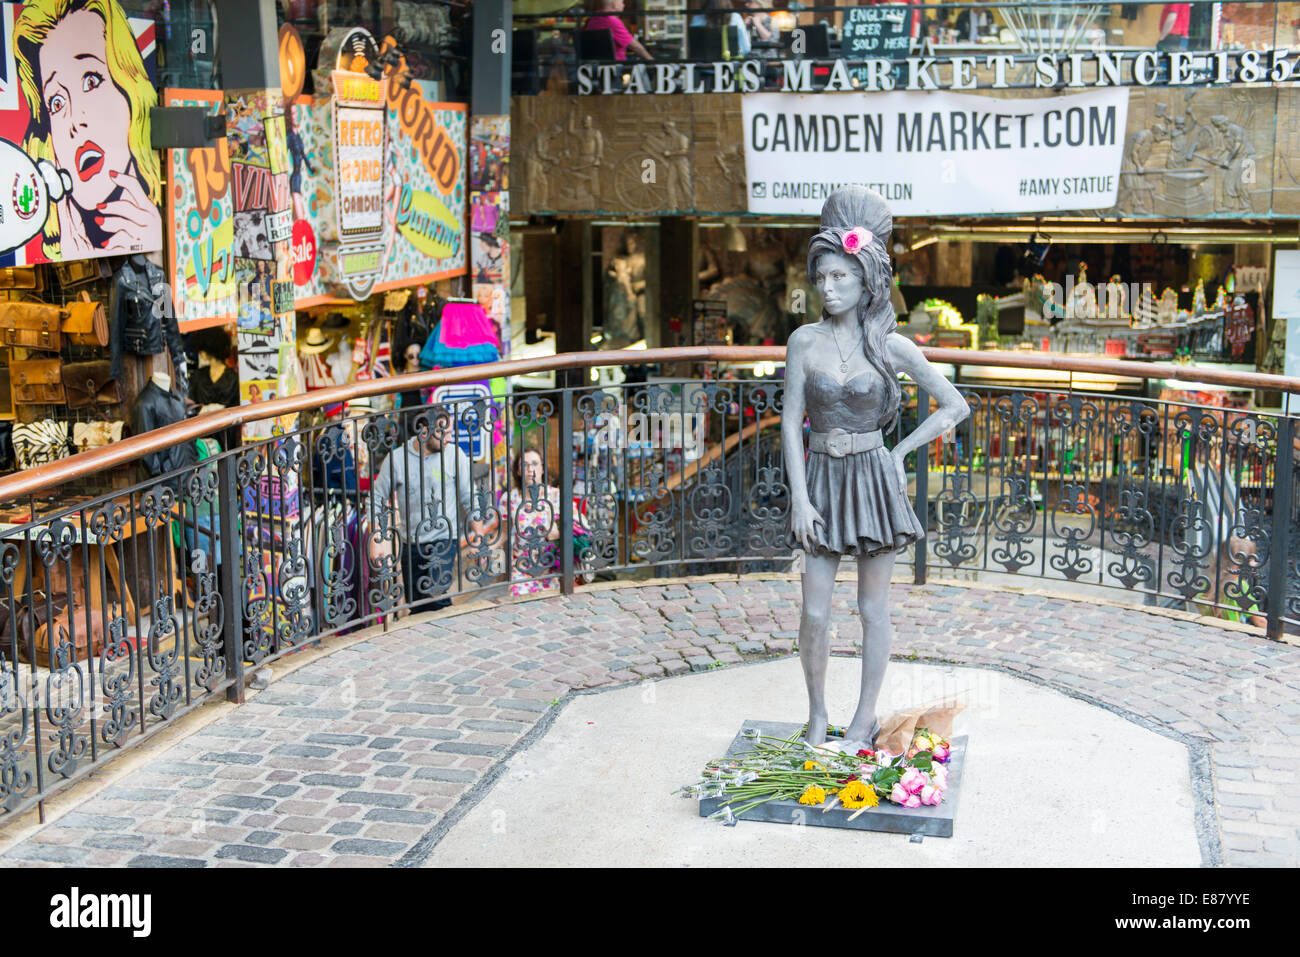 Londres, Reino Unido - 17 DE SEPTIEMBRE: estatua de bronce del difunto cantante Amy Winehouse en Camden Town. Fue descubierto en lo que habría sido él Foto de stock